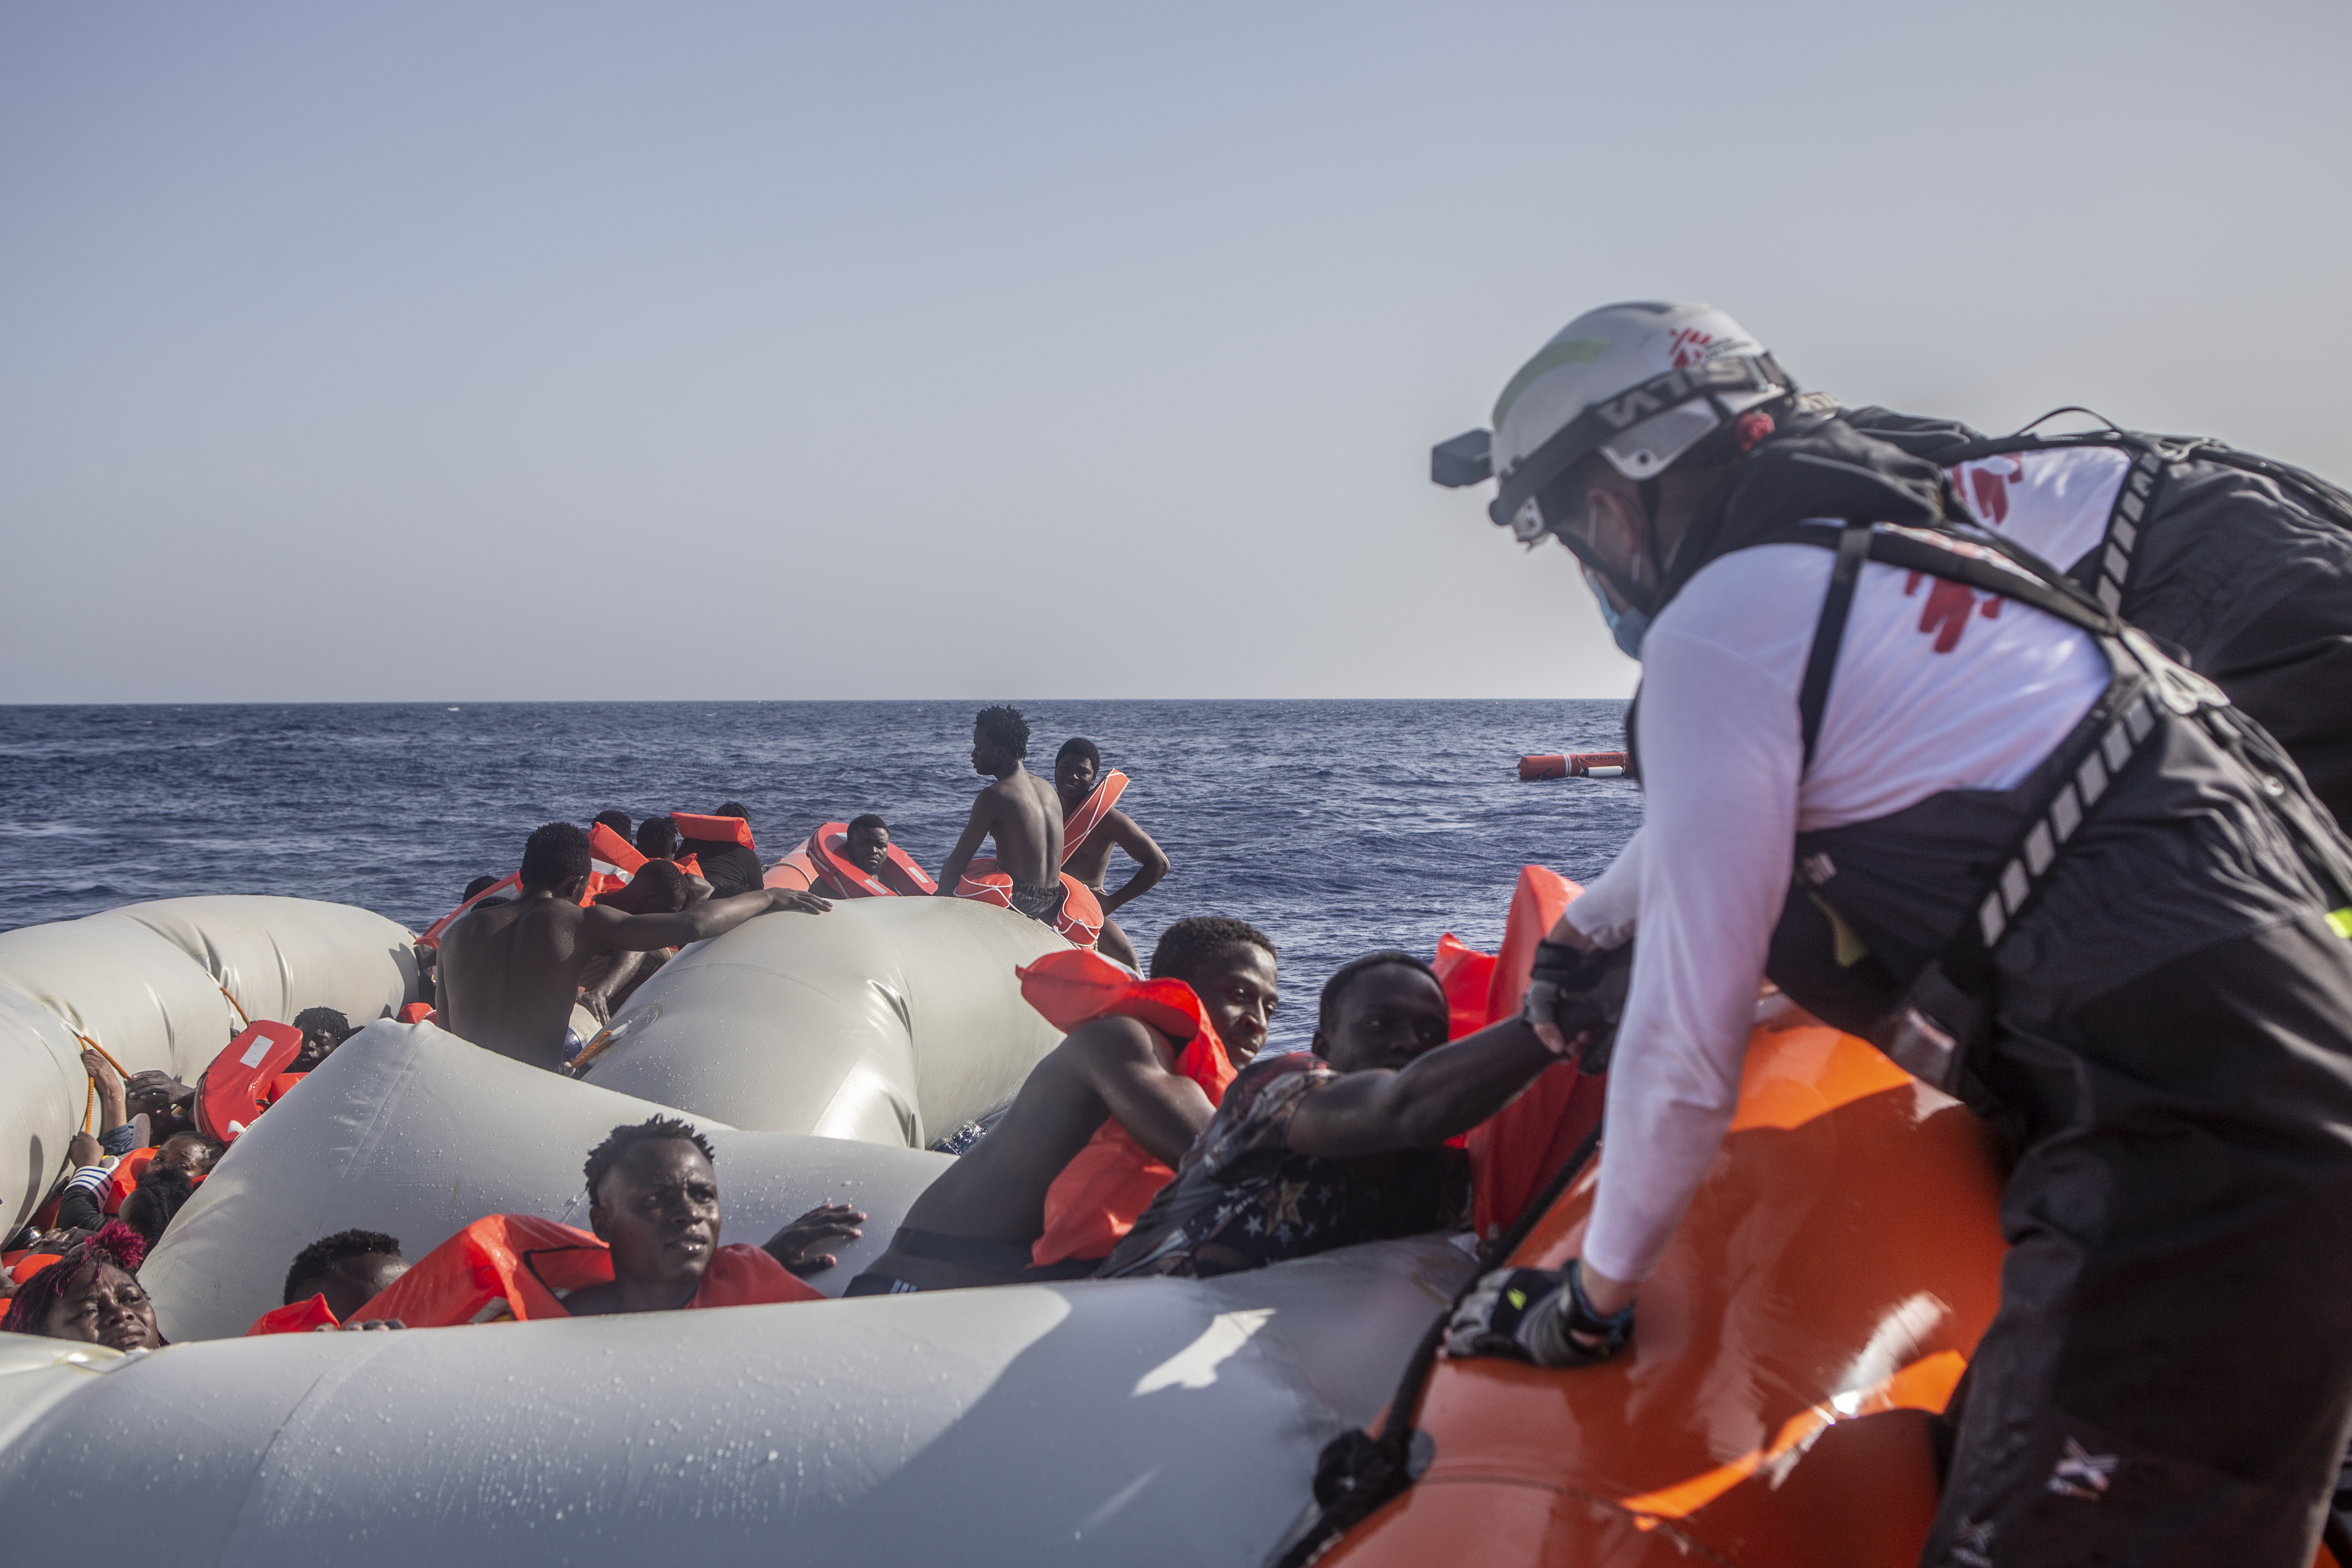 Dans l'après-midi du 27 juin, l'équipe MSF a secouru 71 personnes d'un bateau pneumatique en détresse. 22 personnes sont portées disparues, trois personnes ont été stabilisées, dont de très jeunes enfants, et une femme est décédée plus tard à bord, après 30 minutes de réanimation.  Une femme et son bébé dans un état critique ont également été évacués vers Malte au cours de la même nuit. © Anna Pantelia/MSF